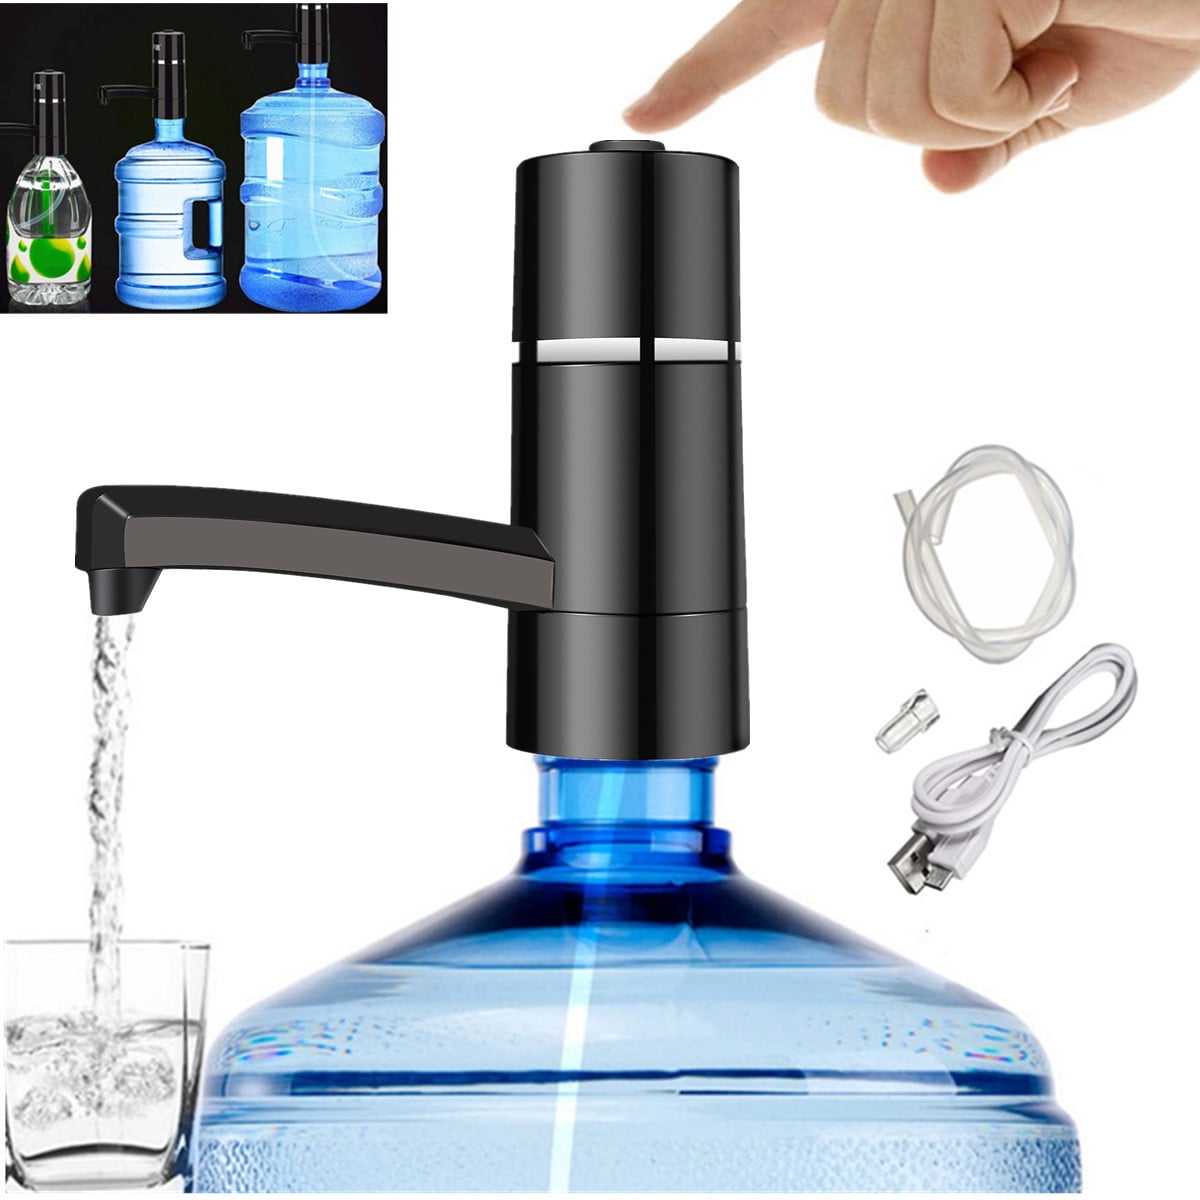 Universal Water Bottle Hand Pump Dispenser For 3 & 5 Gallon Bottles Portable New